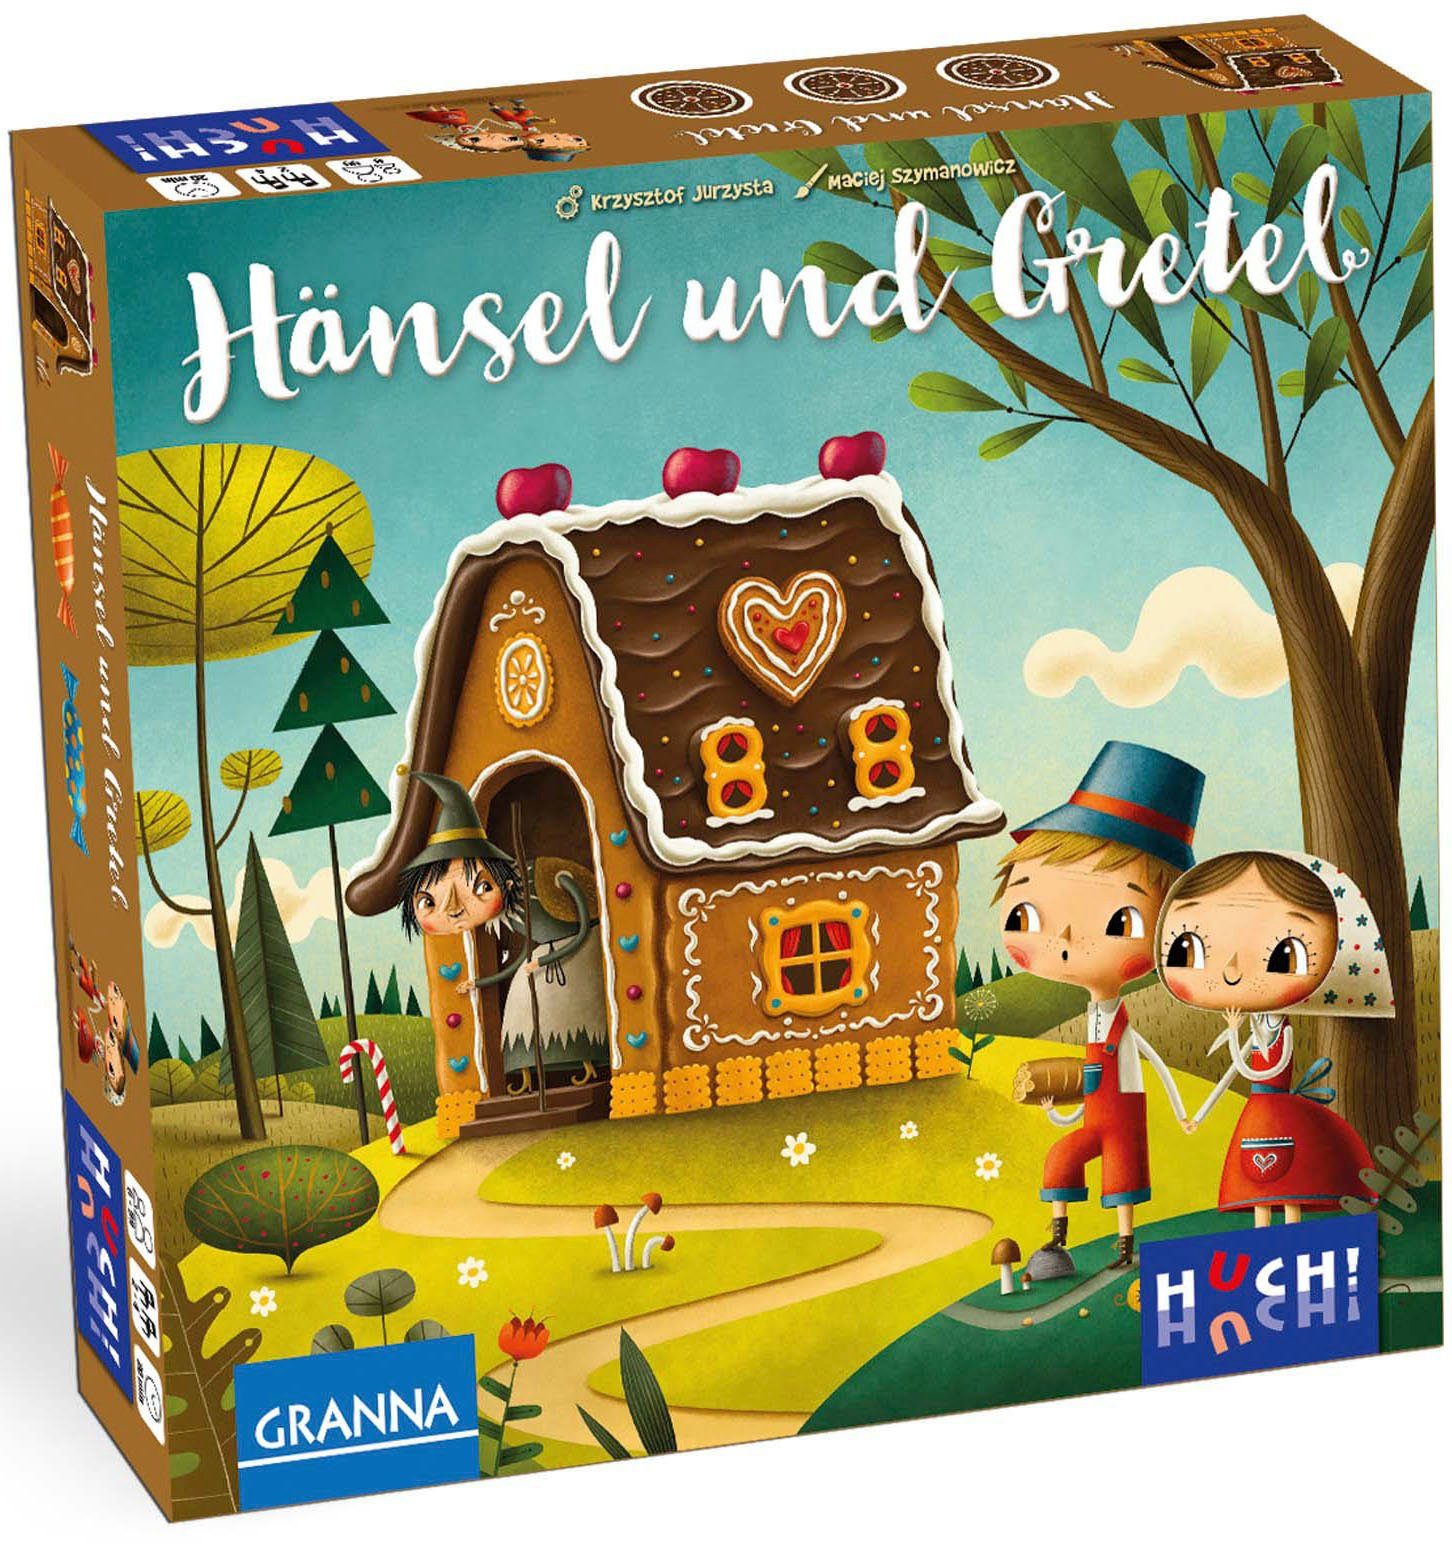 Huch! & Made Europe in Kinderspiel Spiel, Hänsel Gretel,